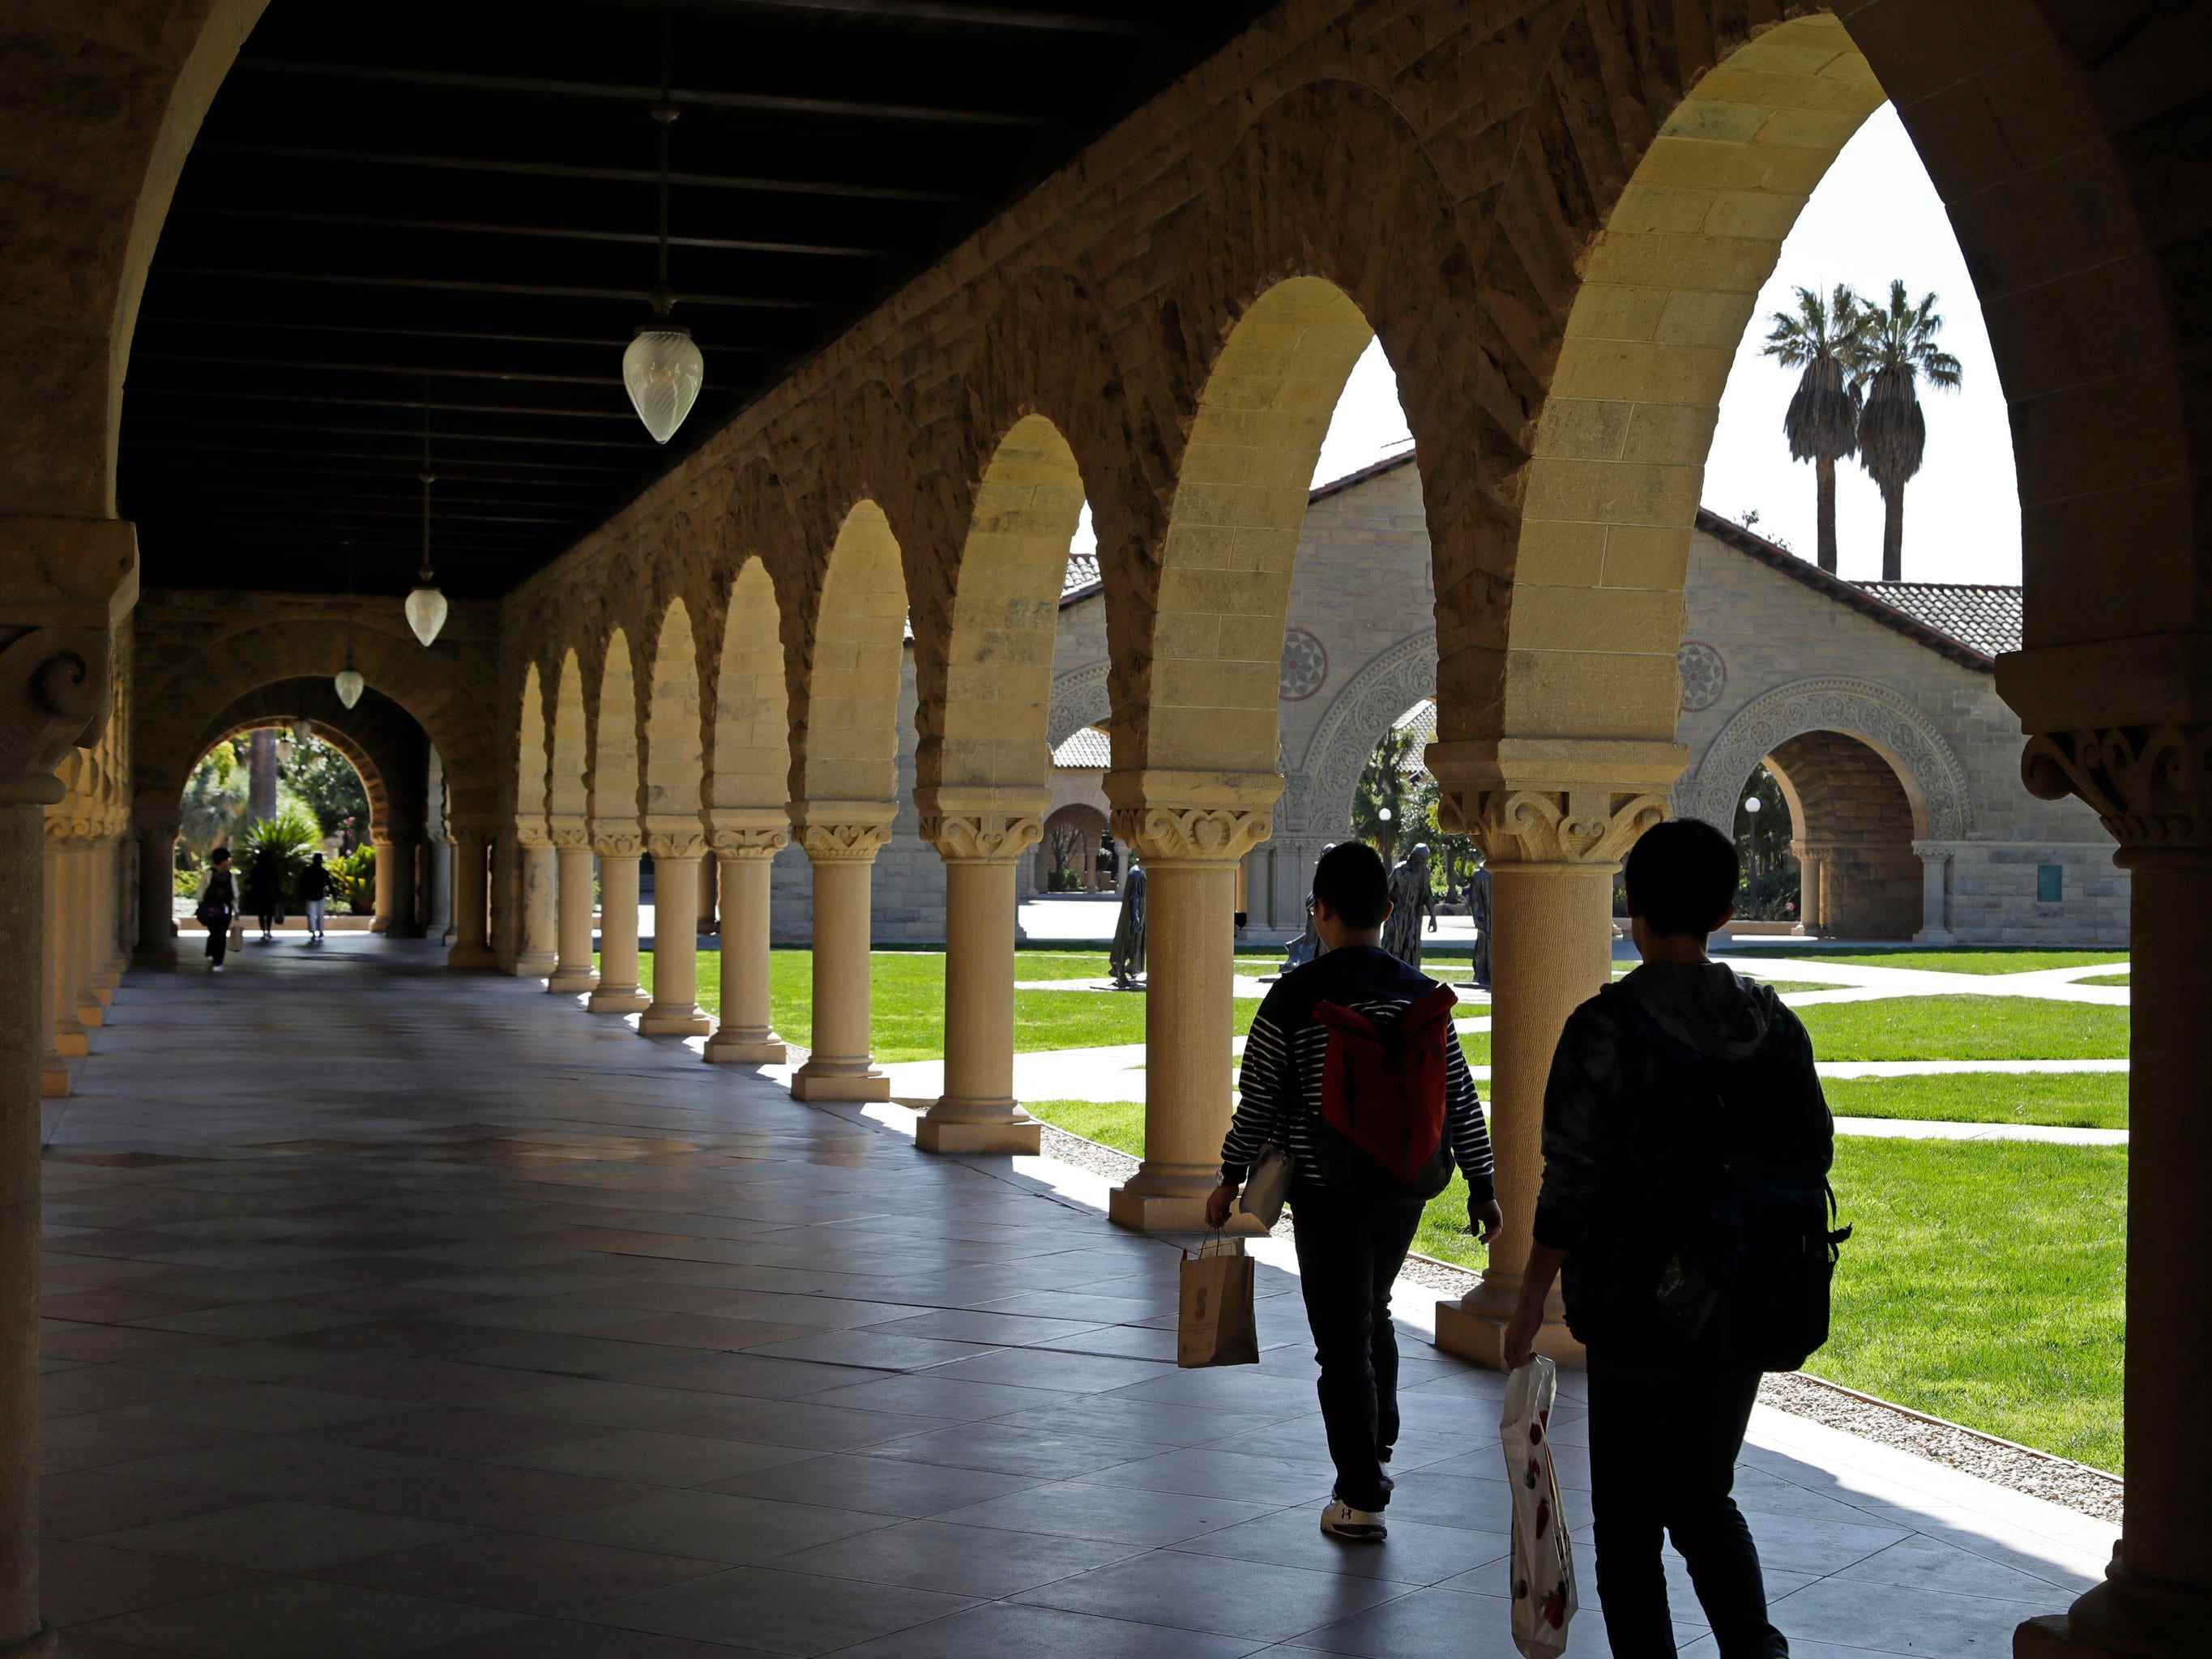 Passanten neben Säulen und Bögen auf dem Campus der Stanford University.